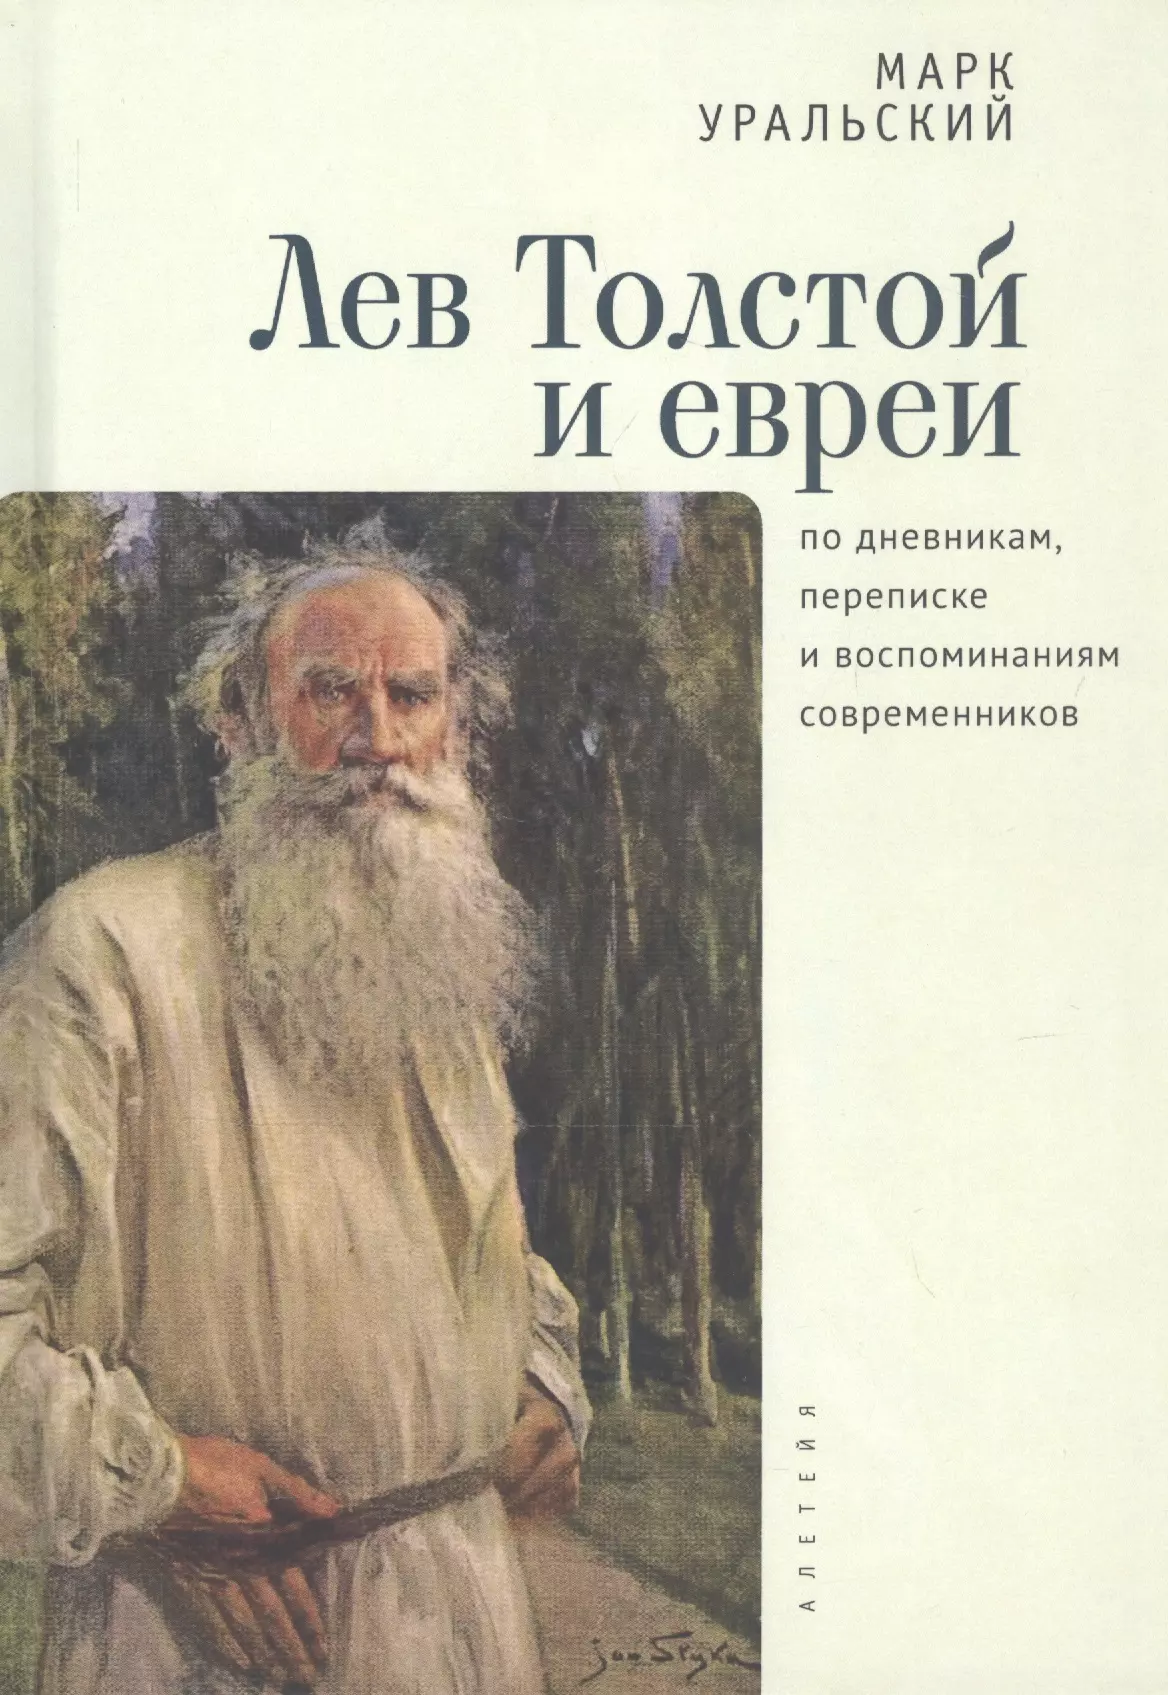 Уральский М. - Лев Толстой и евреи